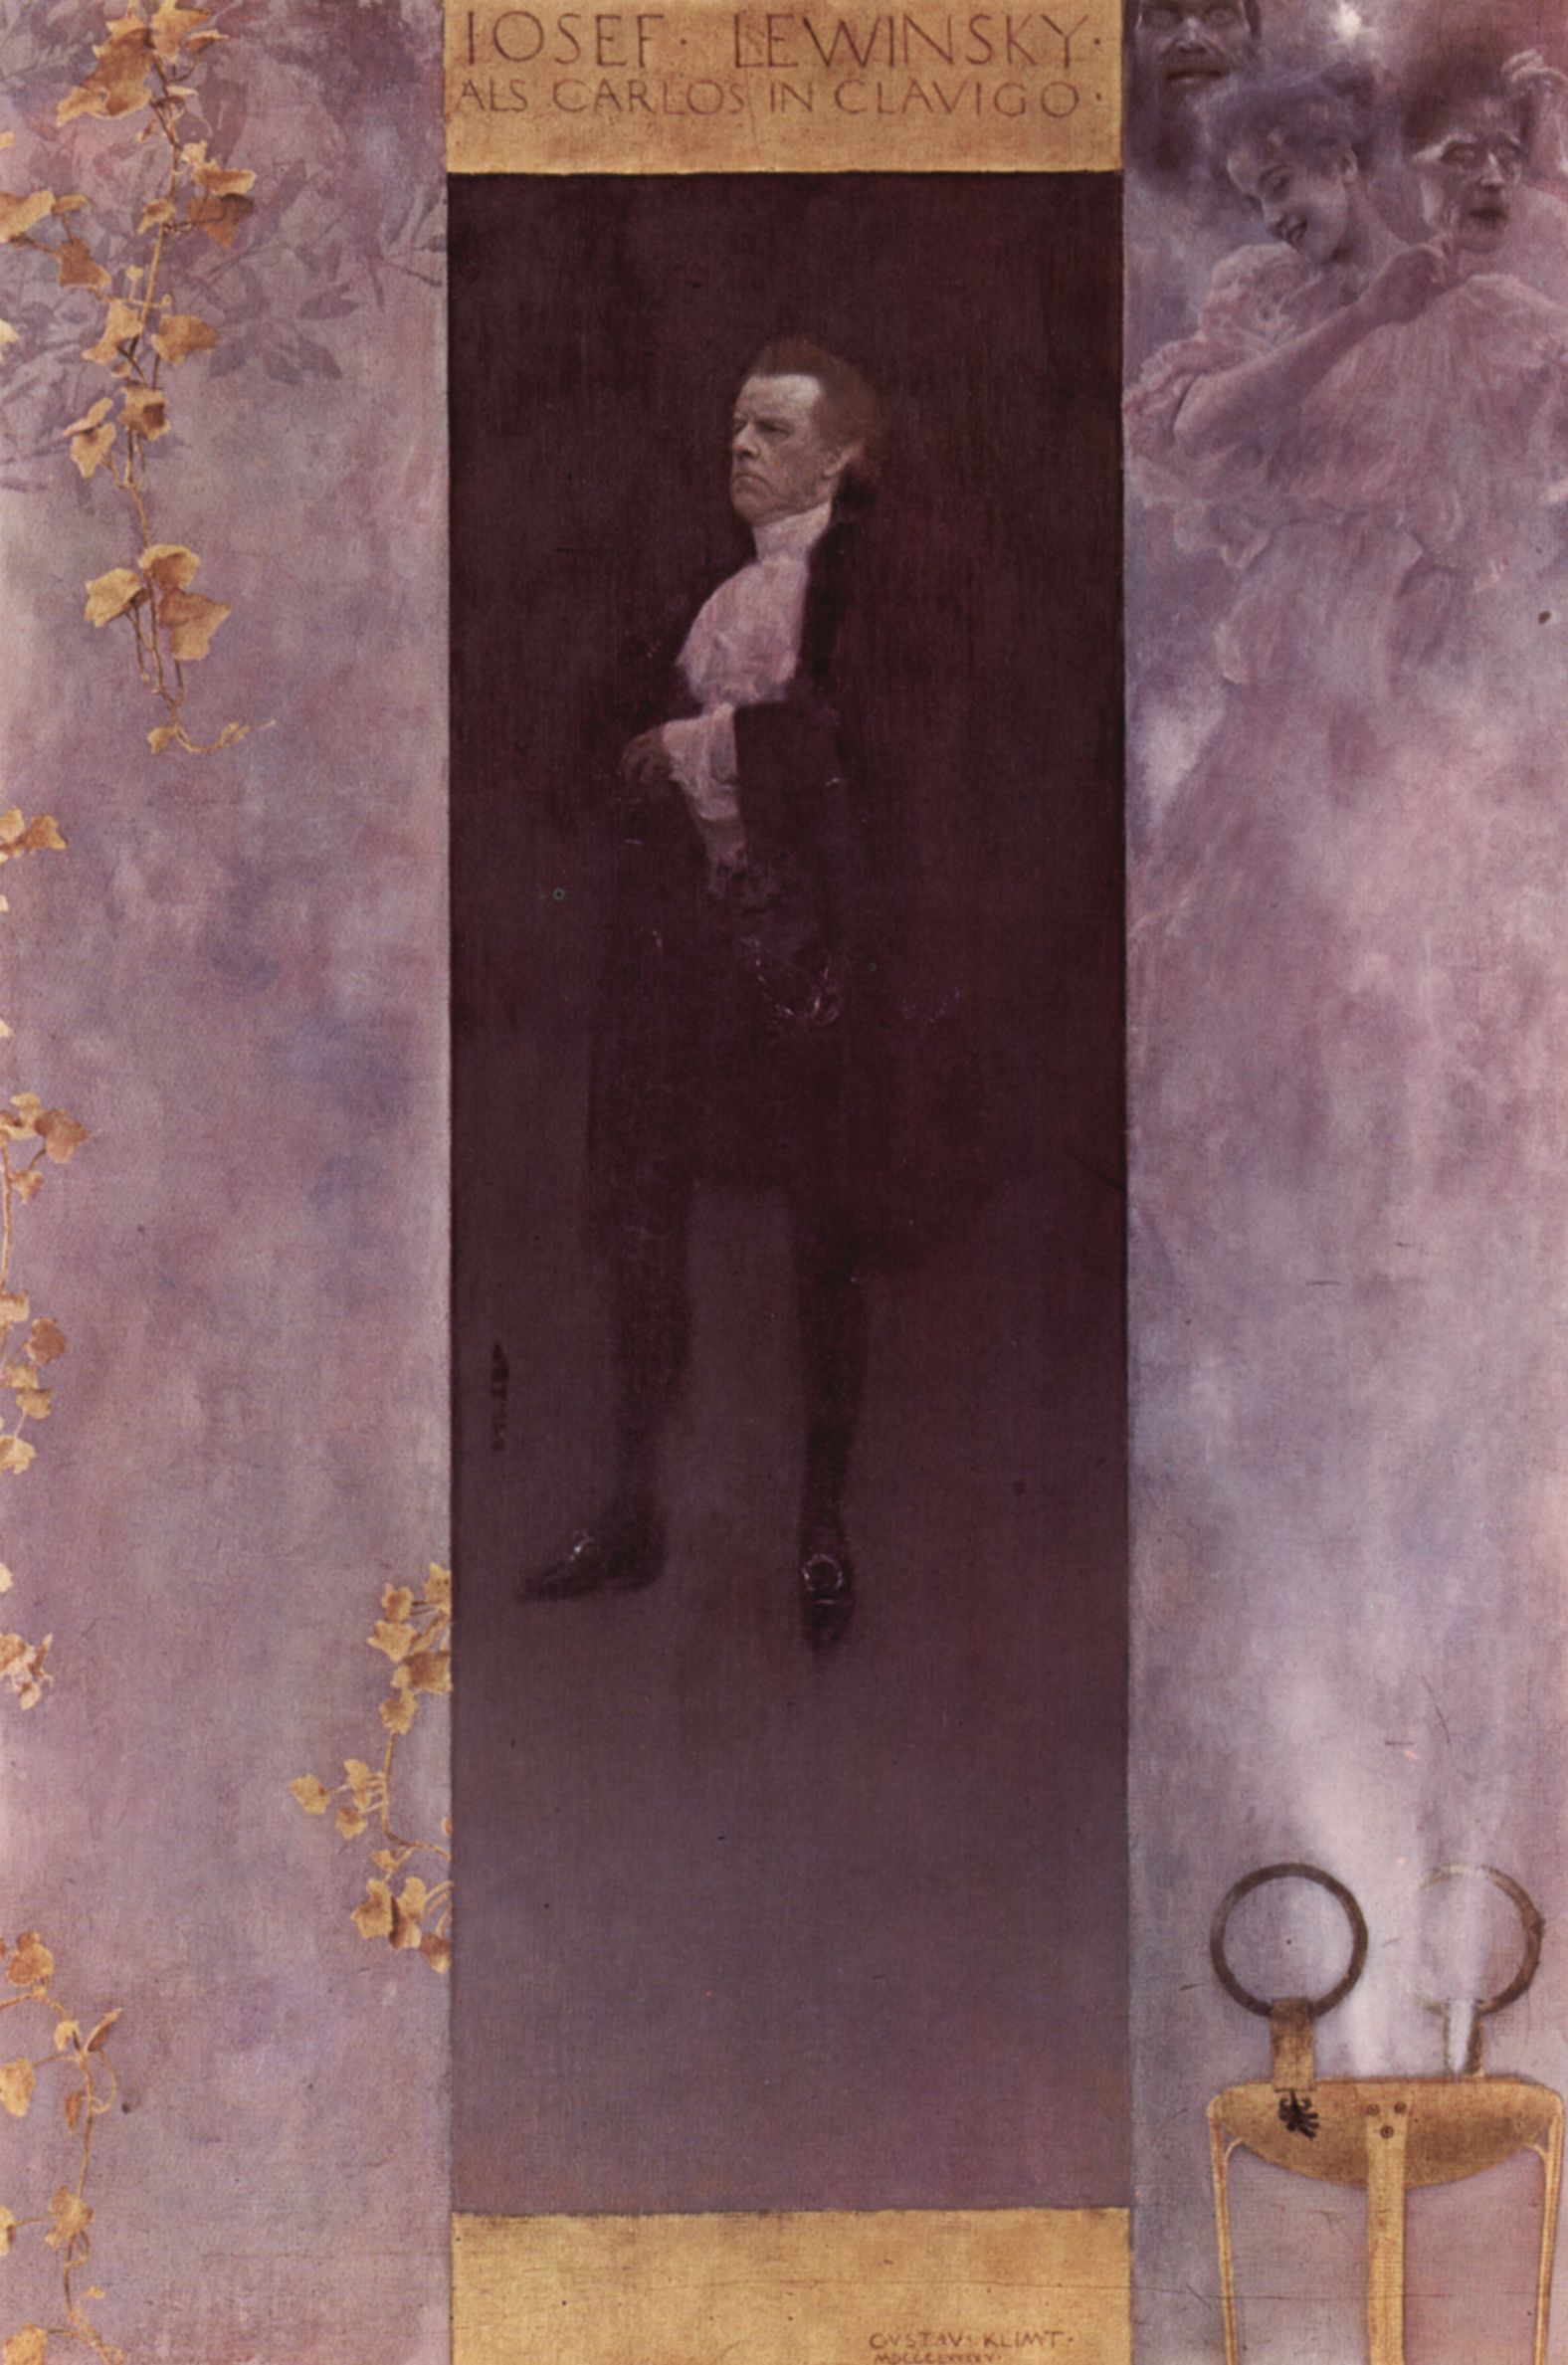 Gustav Klimt: Portrt des Schauspielers Josef Lewinsky als Carlos